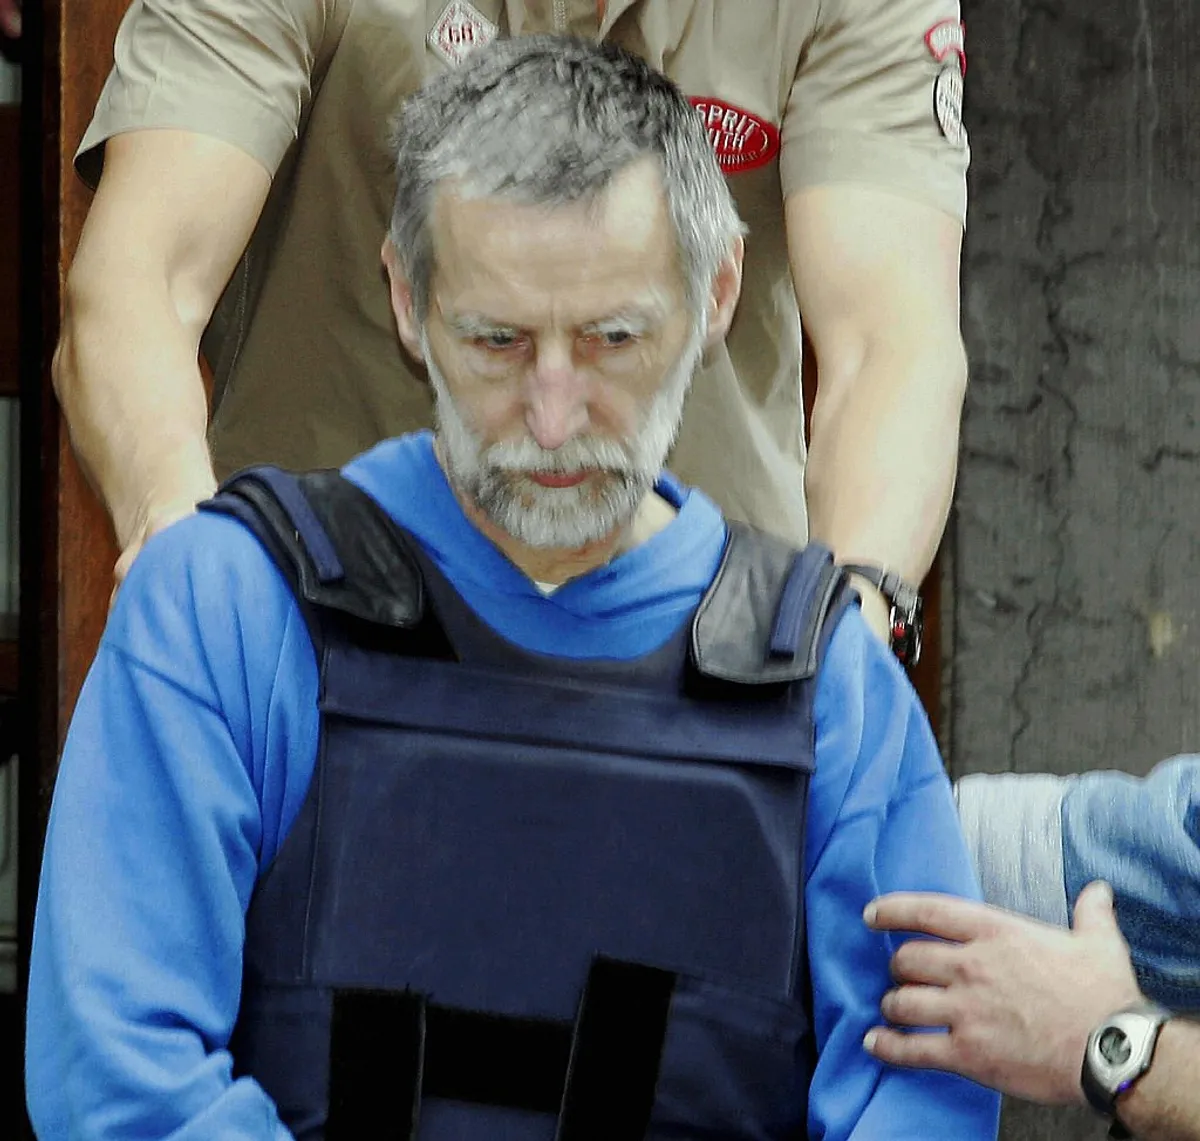 Michel Fourniret arrivant au quartier général de la police à Dinant.  |  Photo: Getty Images